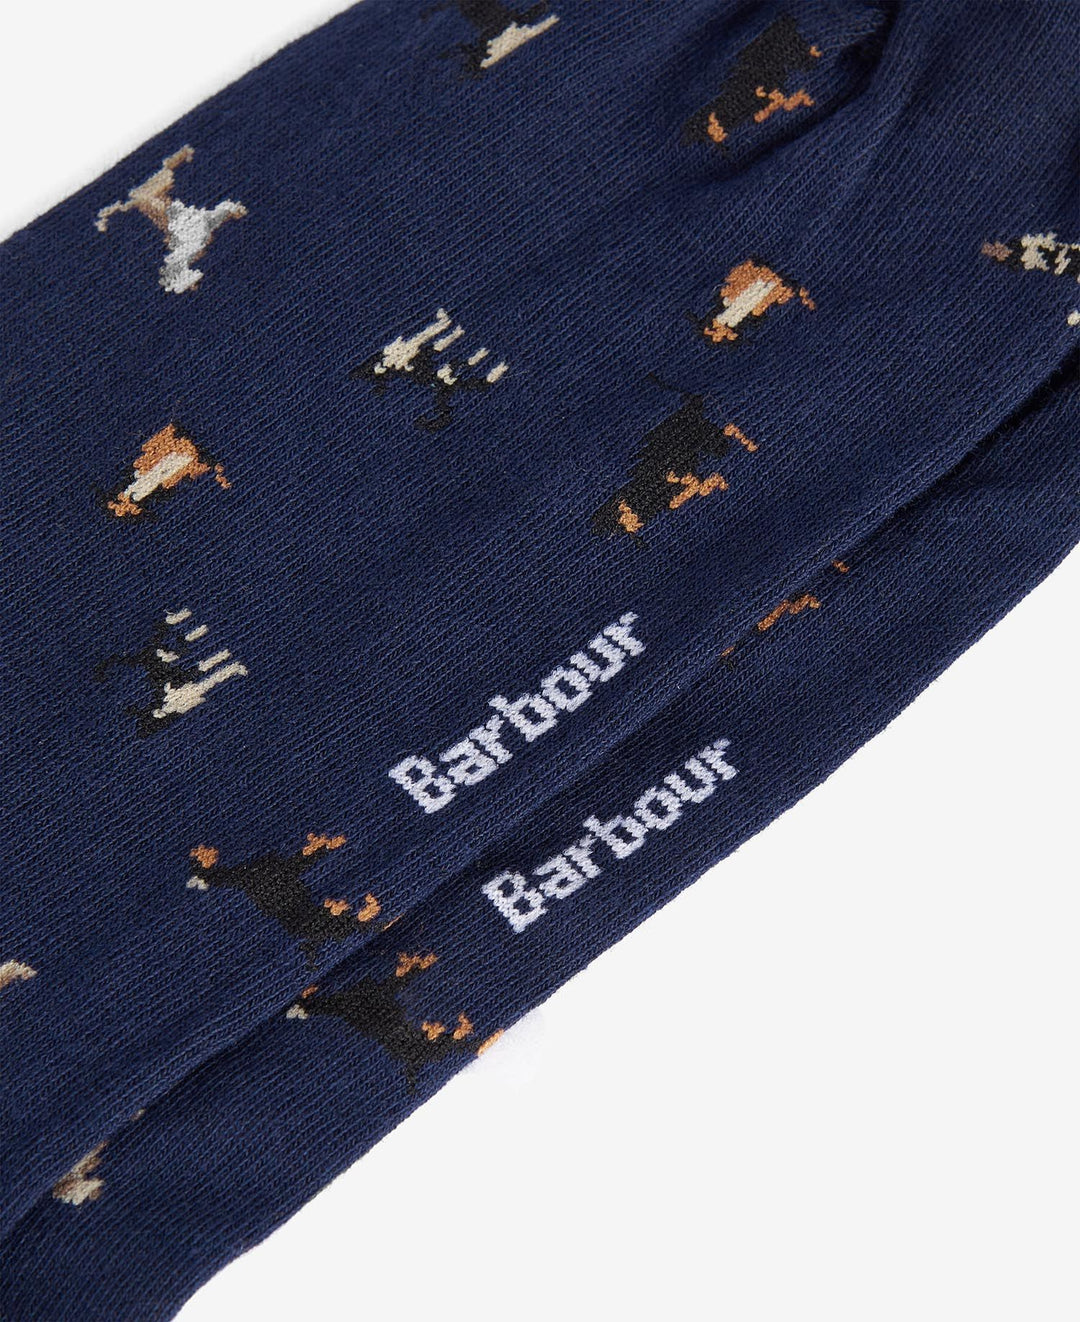 Barbour Mavin Socks Mid Blu/Čarape MSO0068